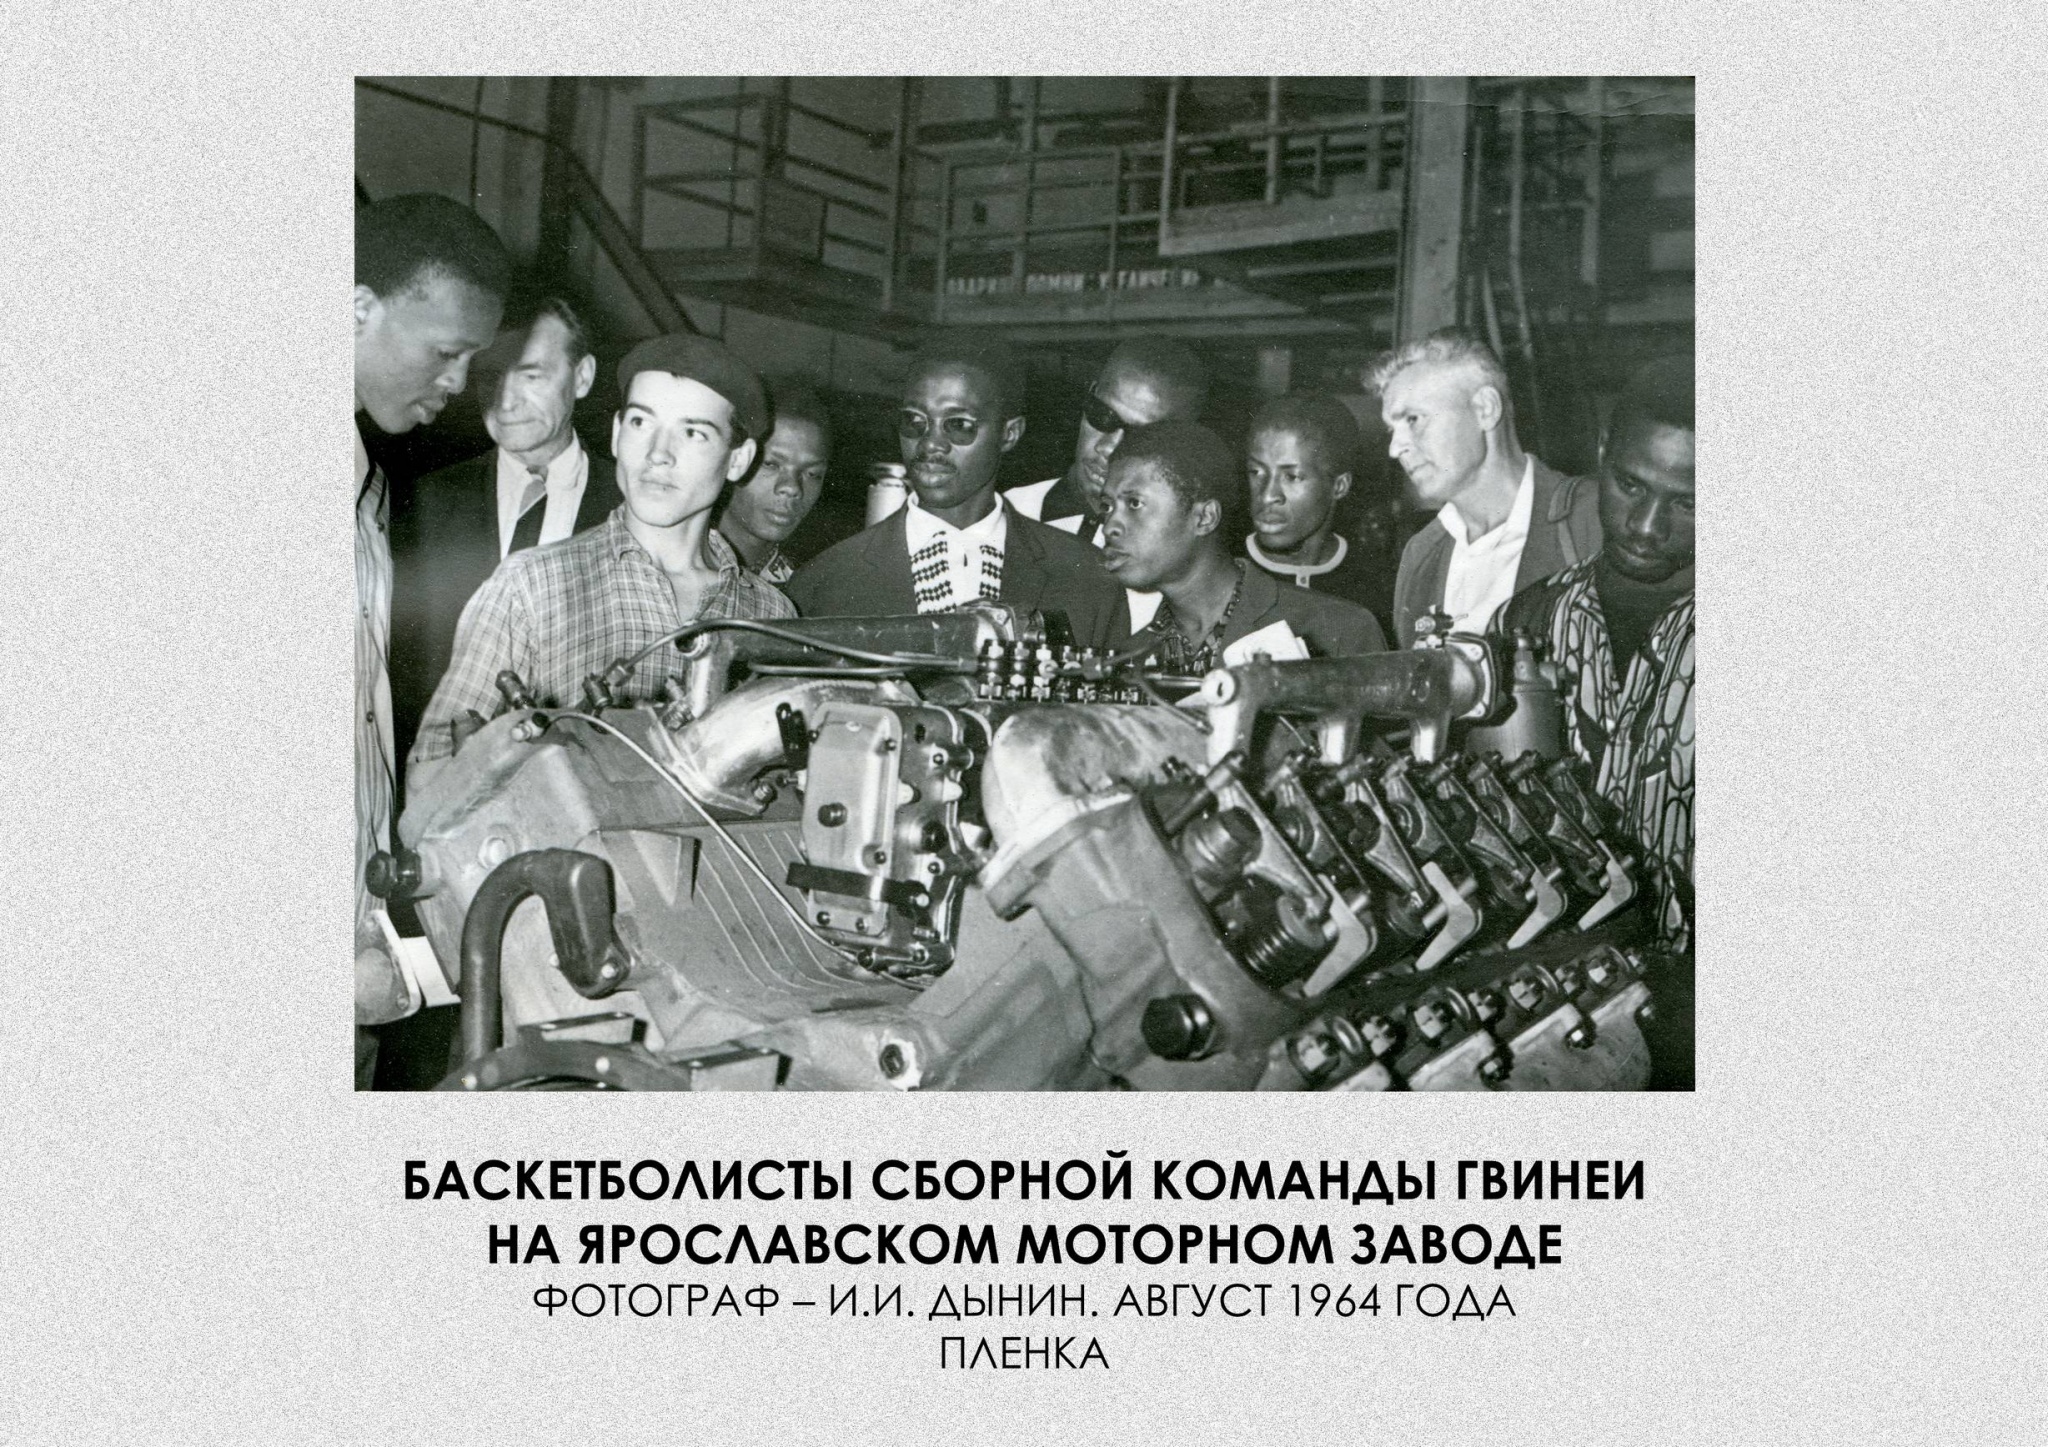 Баскетболисты сборной команды Гвинеи на Ярославском моторном заводе